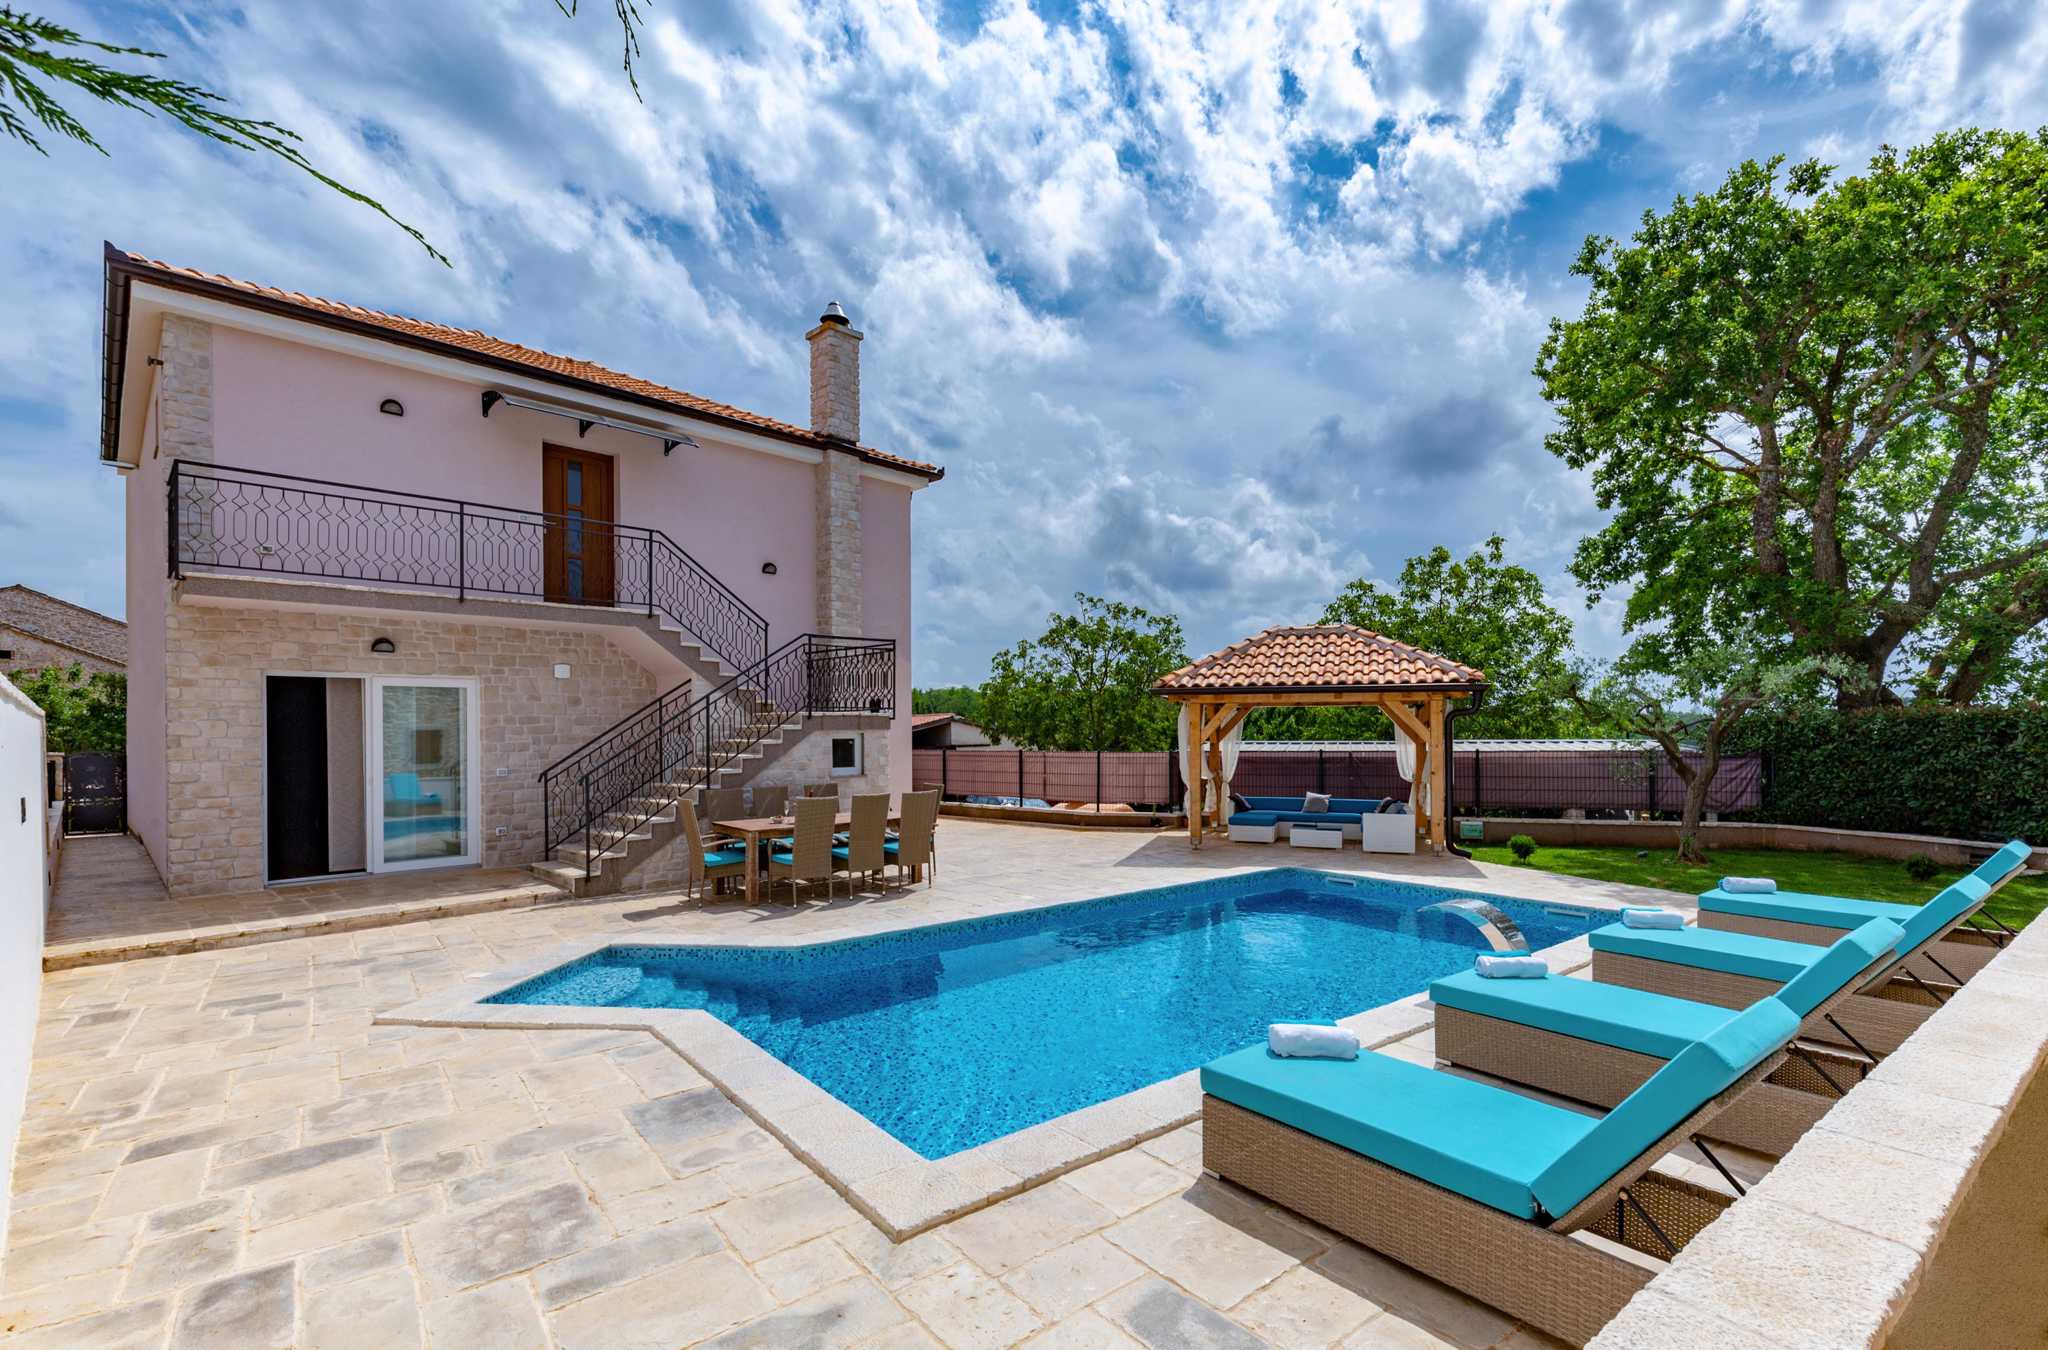 Ferienhaus mit beheizbarem Pool, Billard und Pavil Ferienhaus in Kroatien